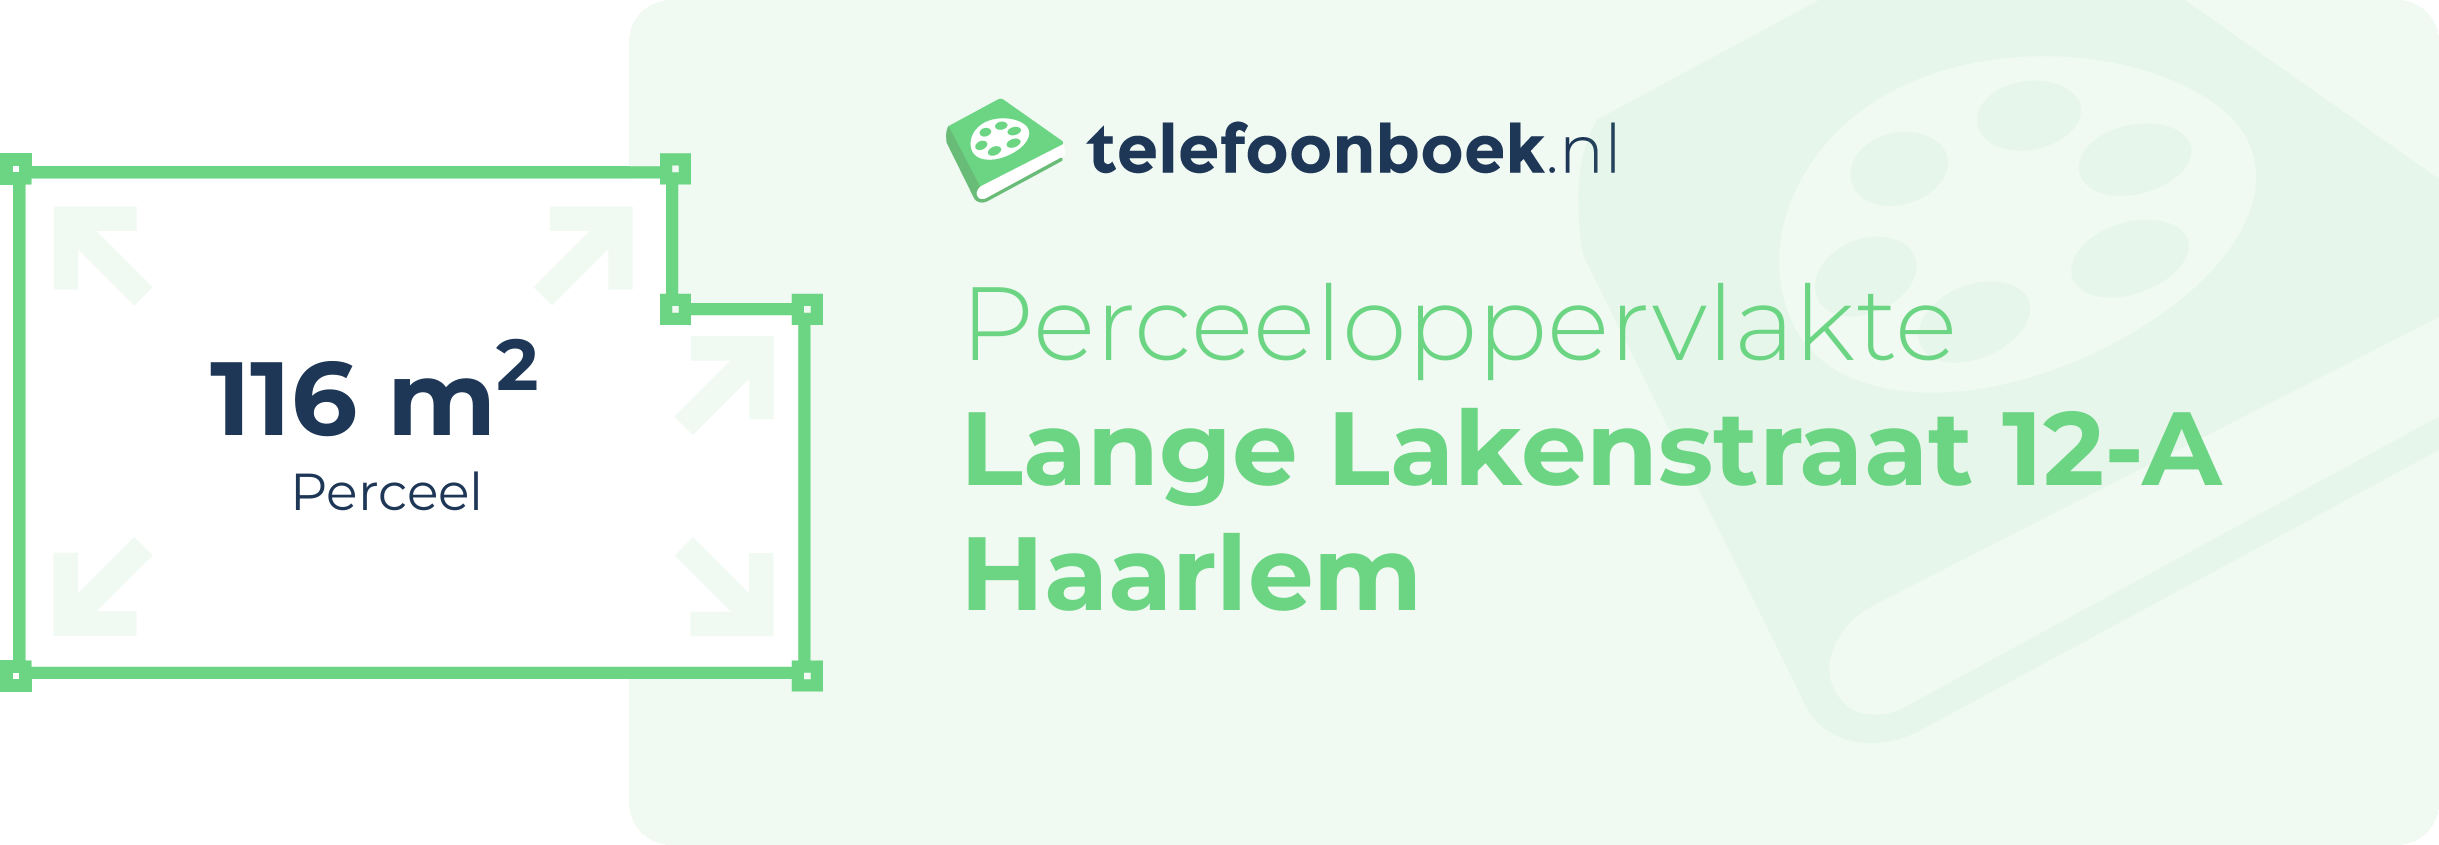 Perceeloppervlakte Lange Lakenstraat 12-A Haarlem